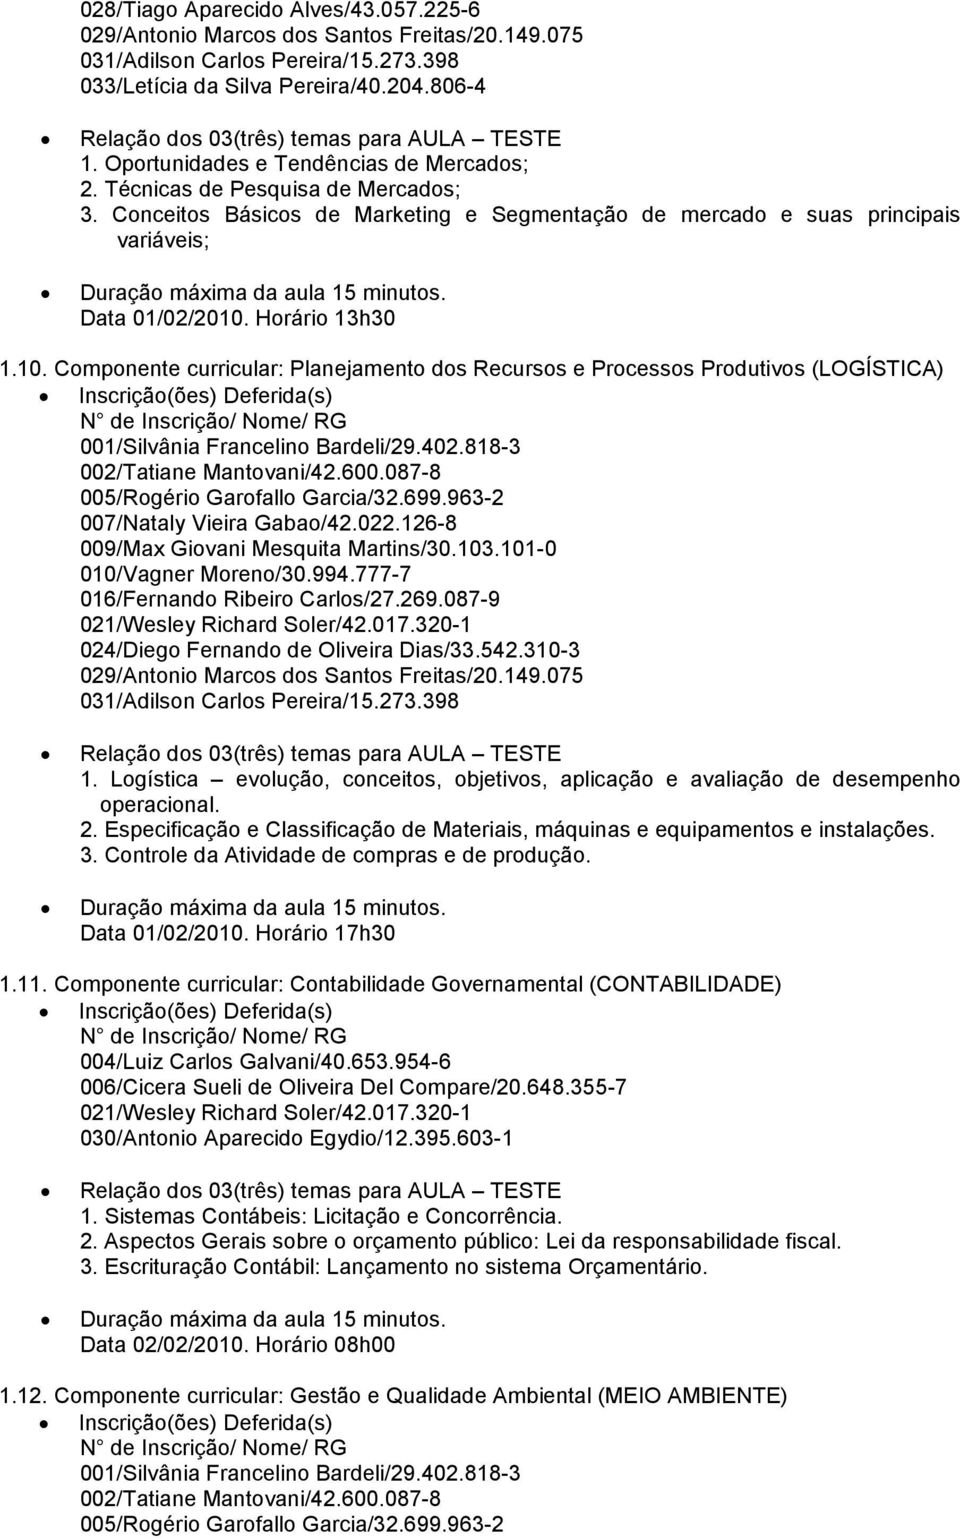 Horário 13h30 1.10. Componente curricular: Planejamento dos Recursos e Processos Produtivos (LOGÍSTICA) 001/Silvânia Francelino Bardeli/29.402.818-3 002/Tatiane Mantovani/42.600.